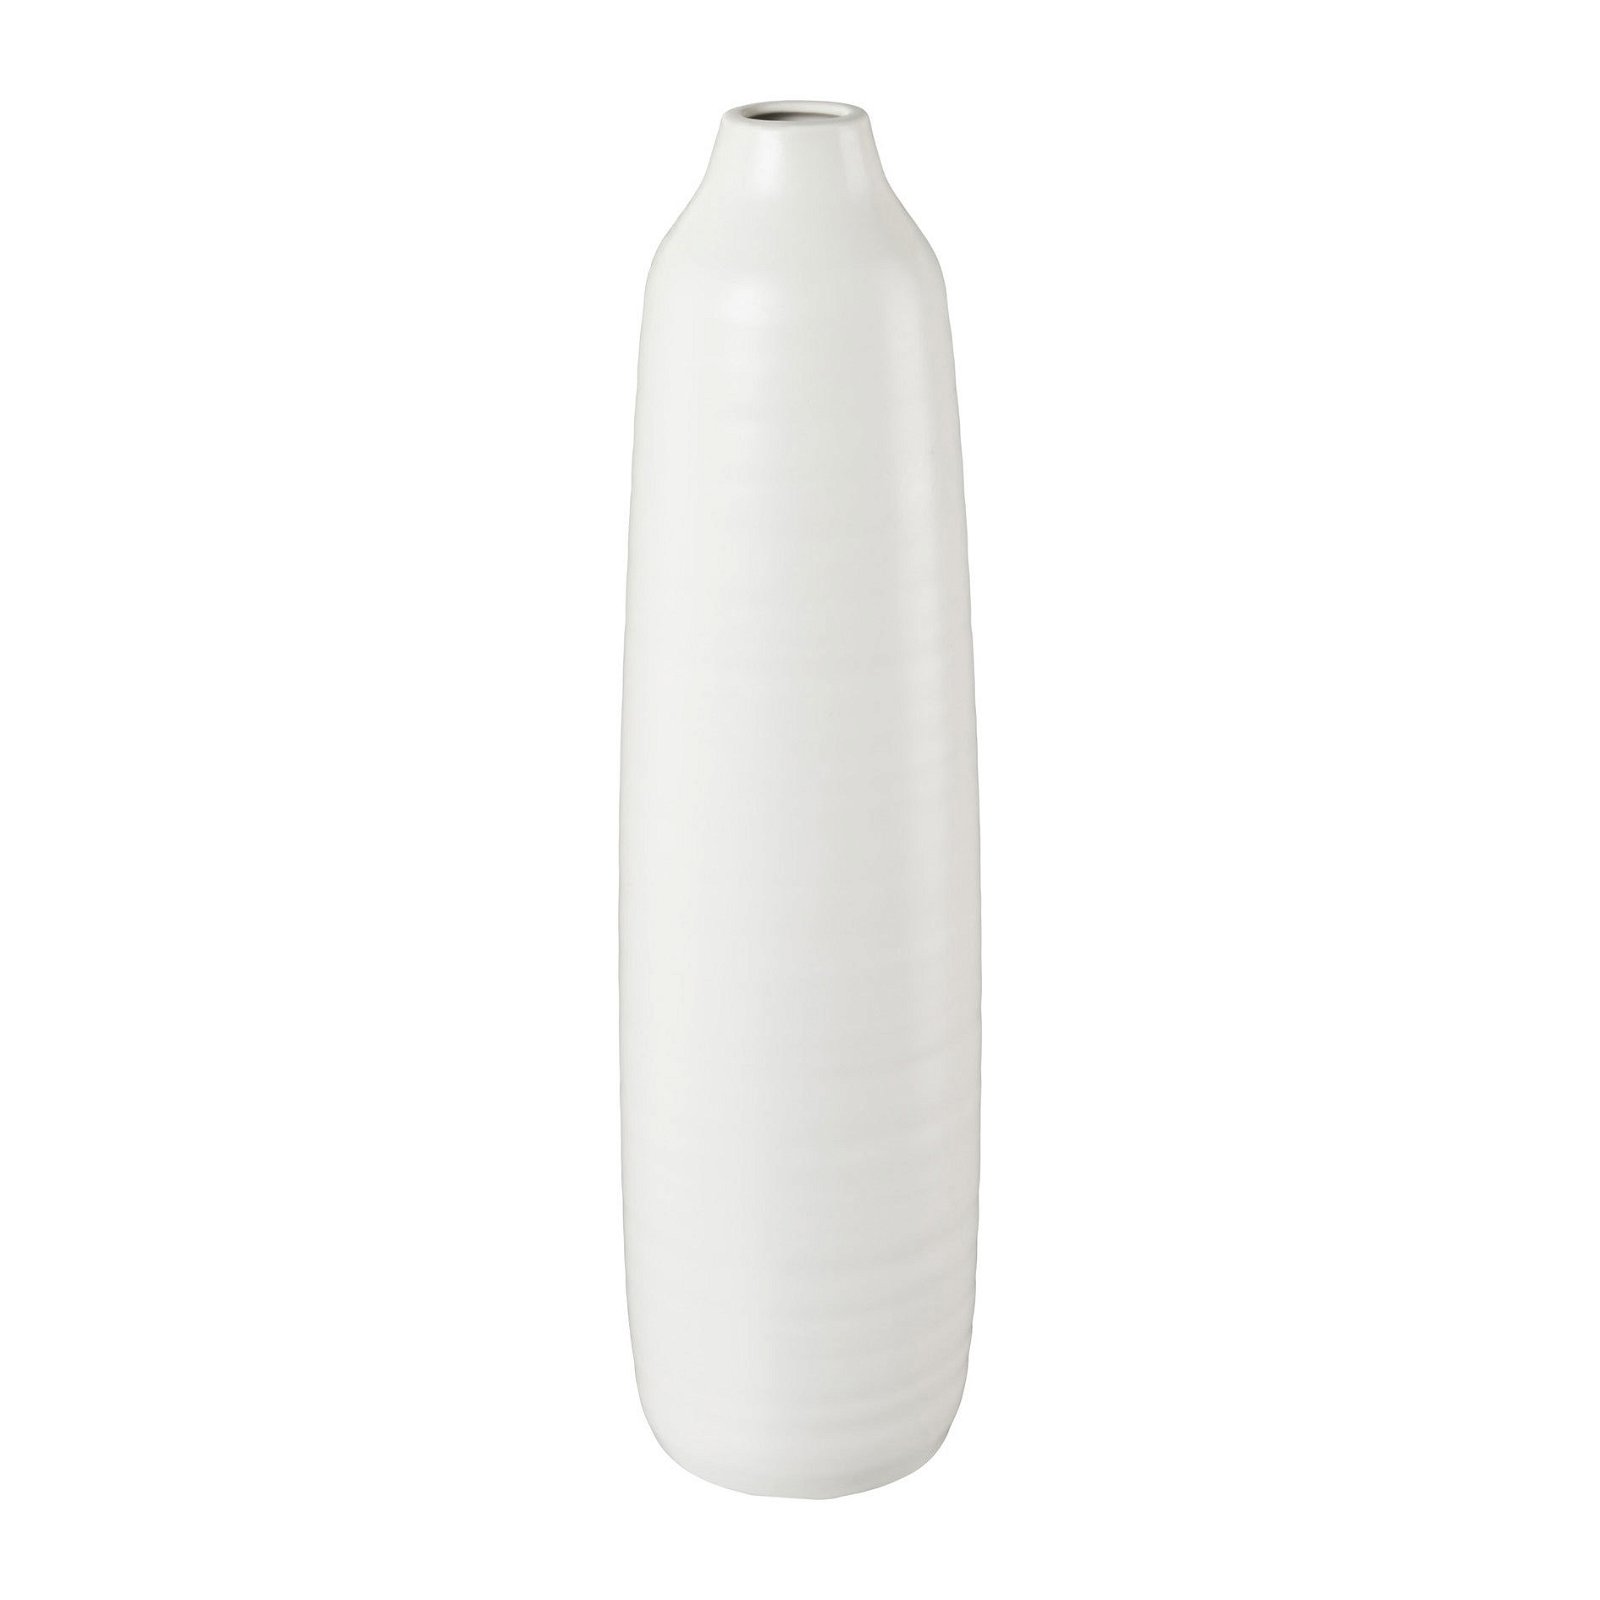 Vase Presence, Keramik, Weiß, 11 x 11 x 40 cm